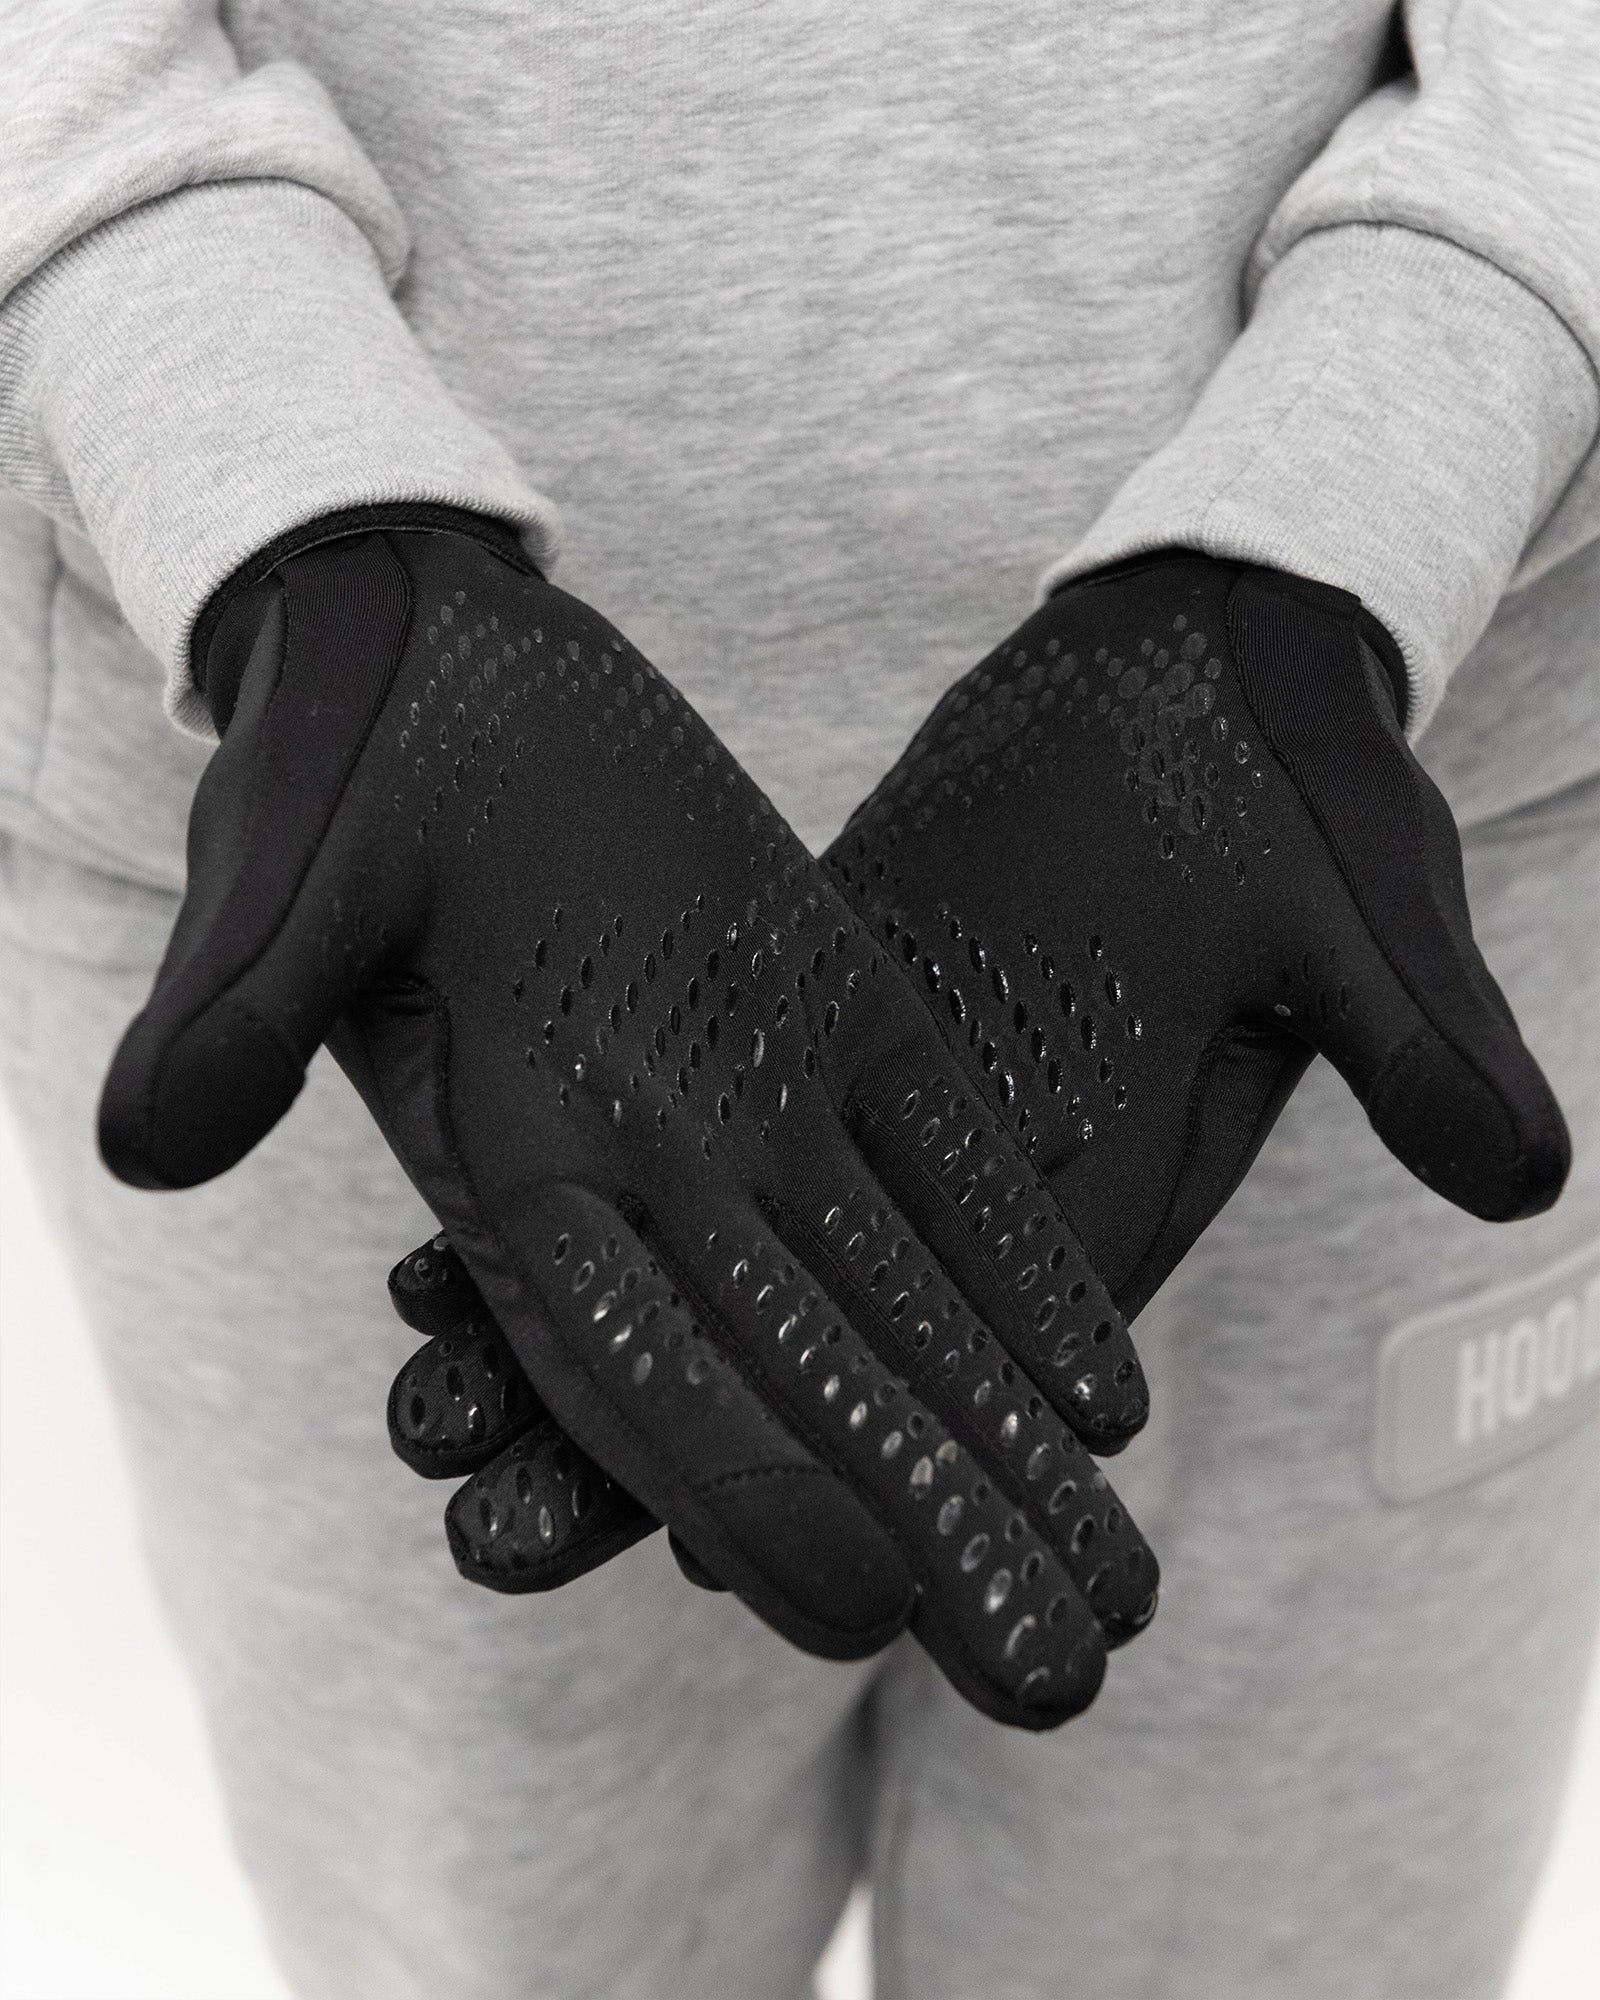 OG Core V2 Gloves - Black/White